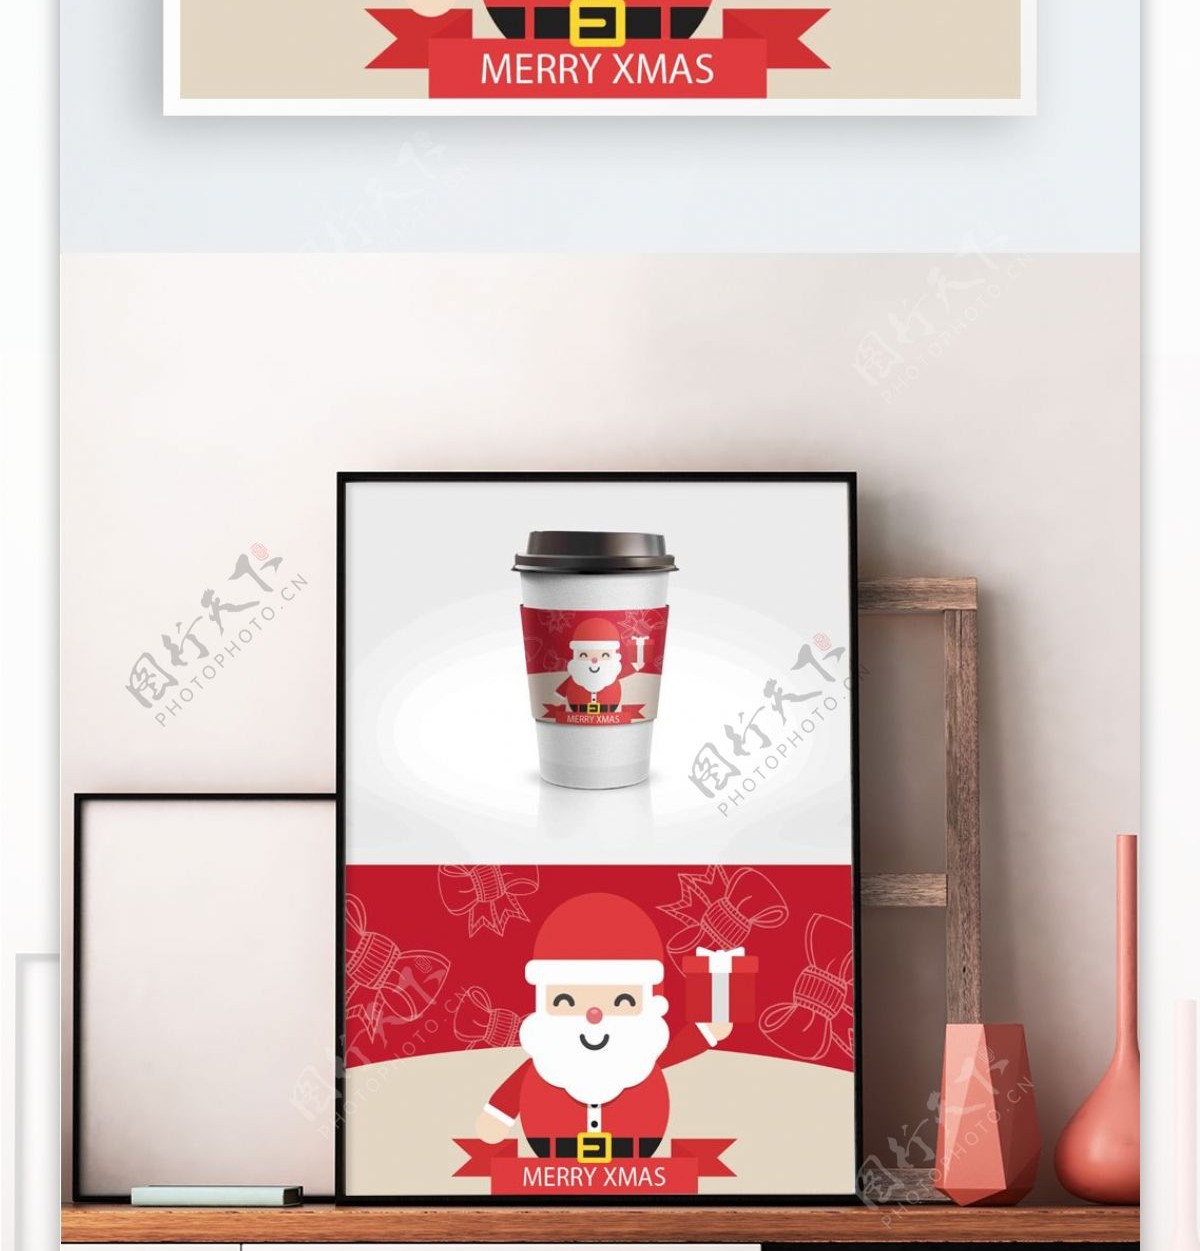 可爱有趣圣诞老人蝴蝶结节日包装咖啡杯套设计